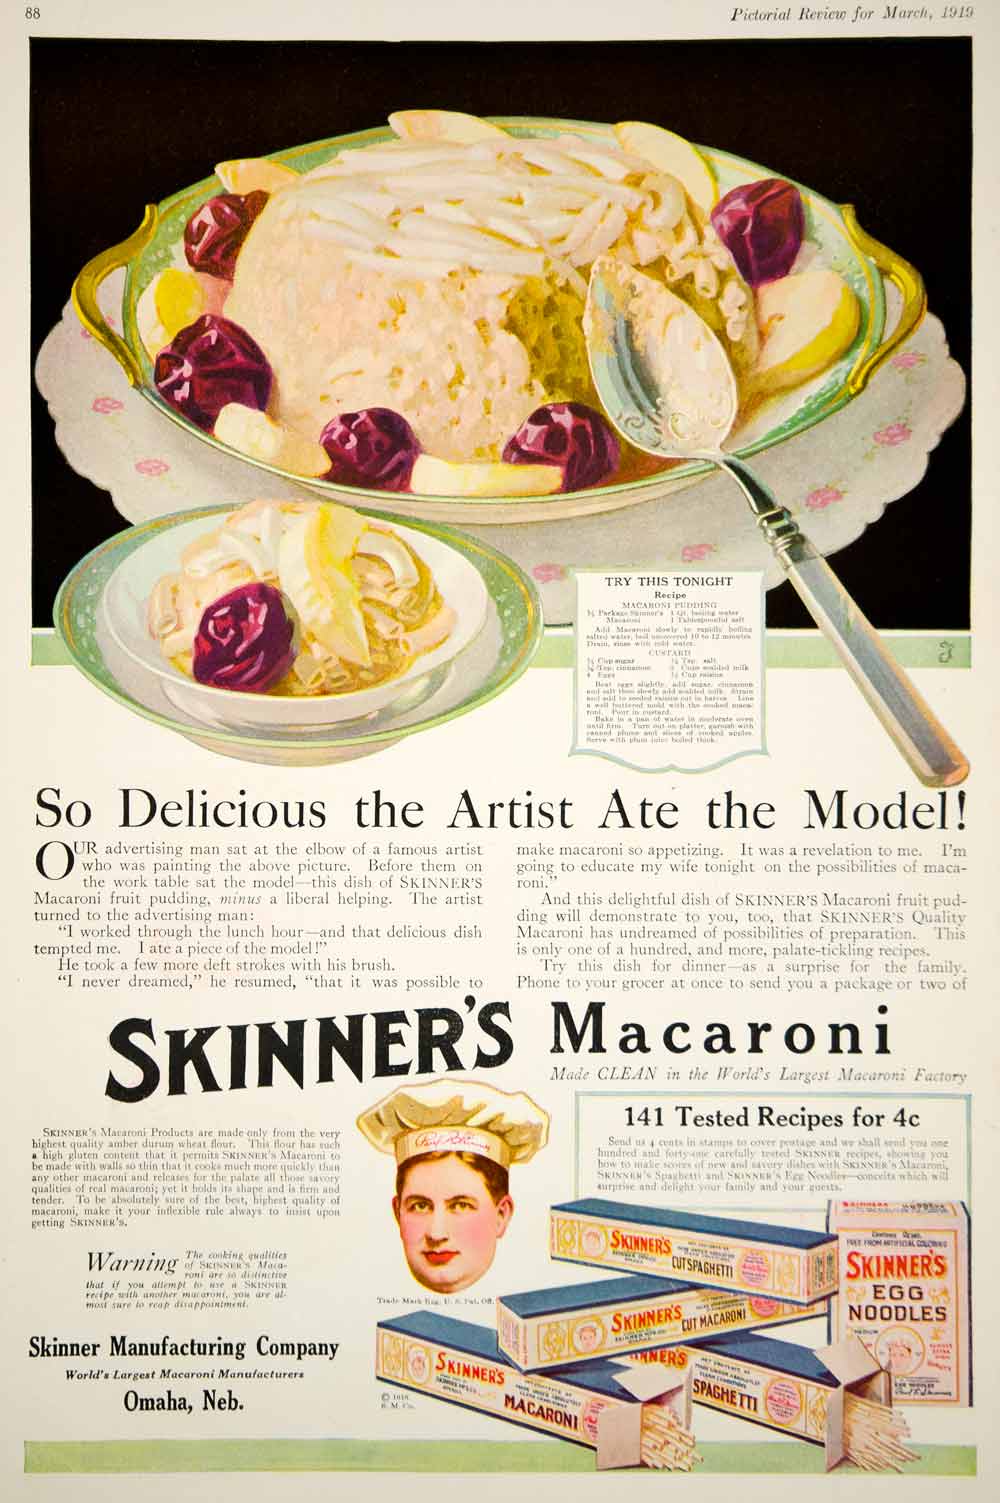 1919 Ad Vintage Skinner's Macaroni Pasta Spaghetti Egg Noodles Paul F. Skinner